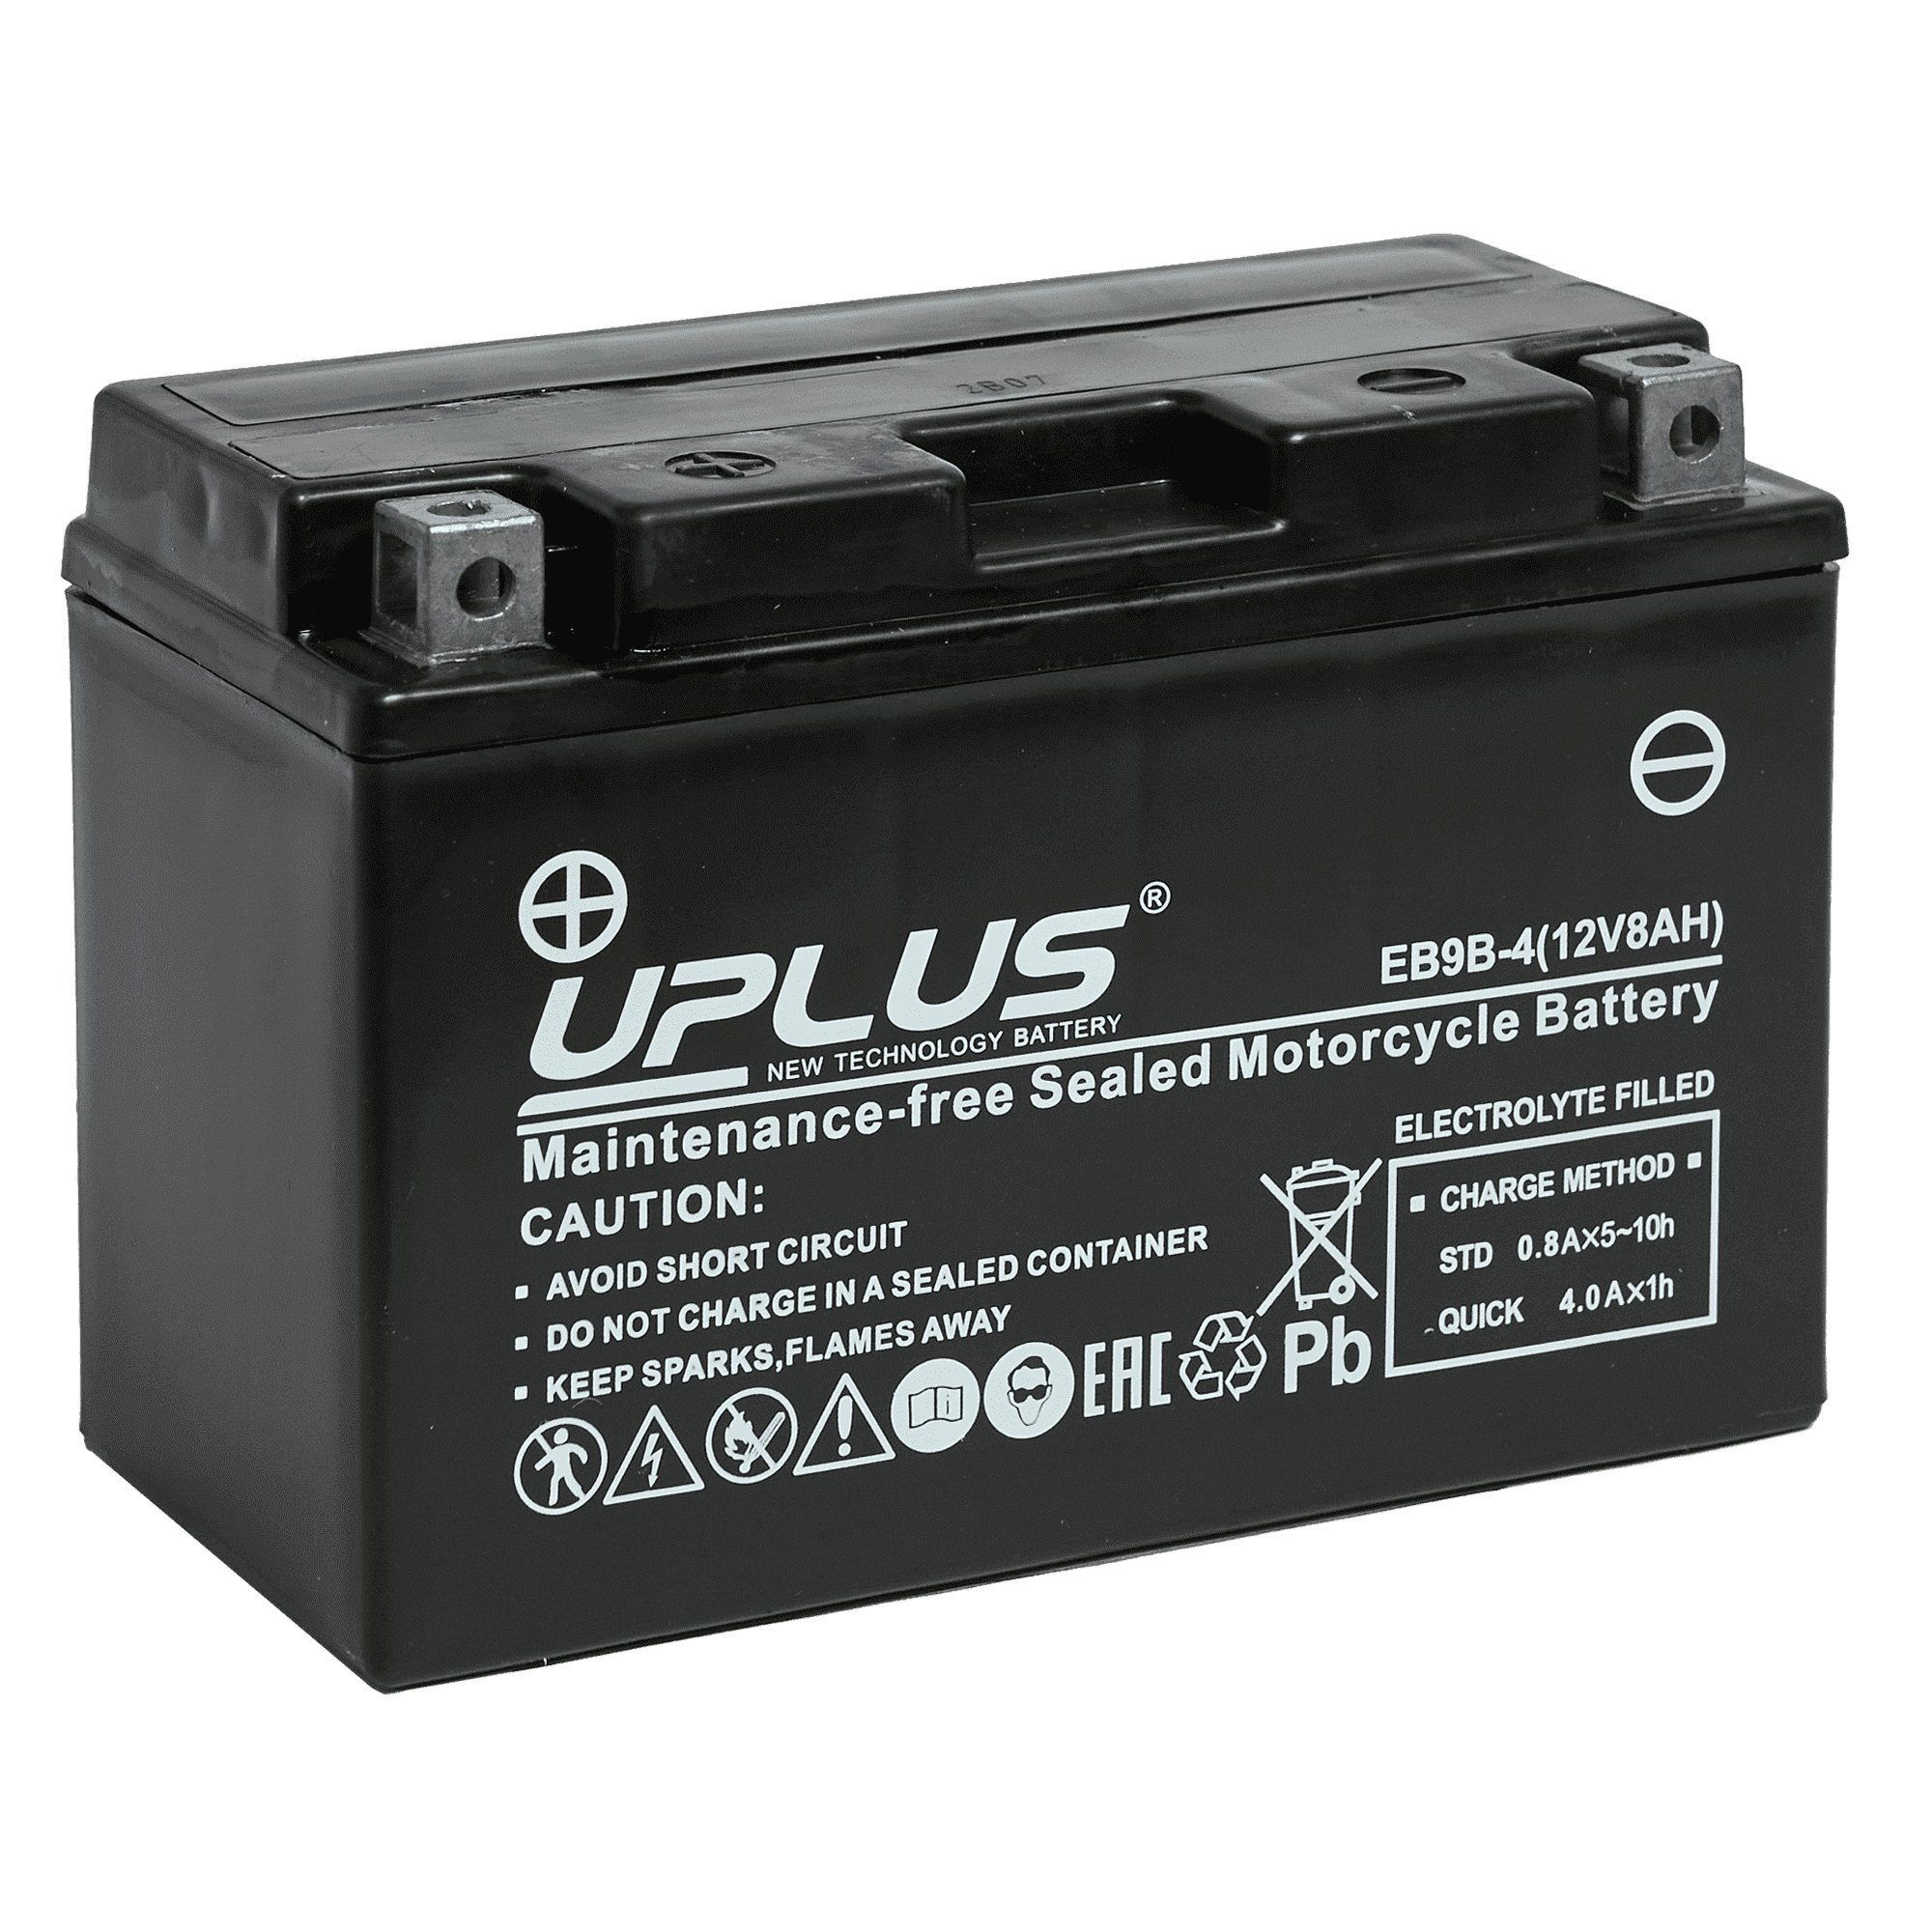 Мотоциклетная аккумуляторная батарея UPLUS High Performance  EB9-4, 8 Ач, 1/0